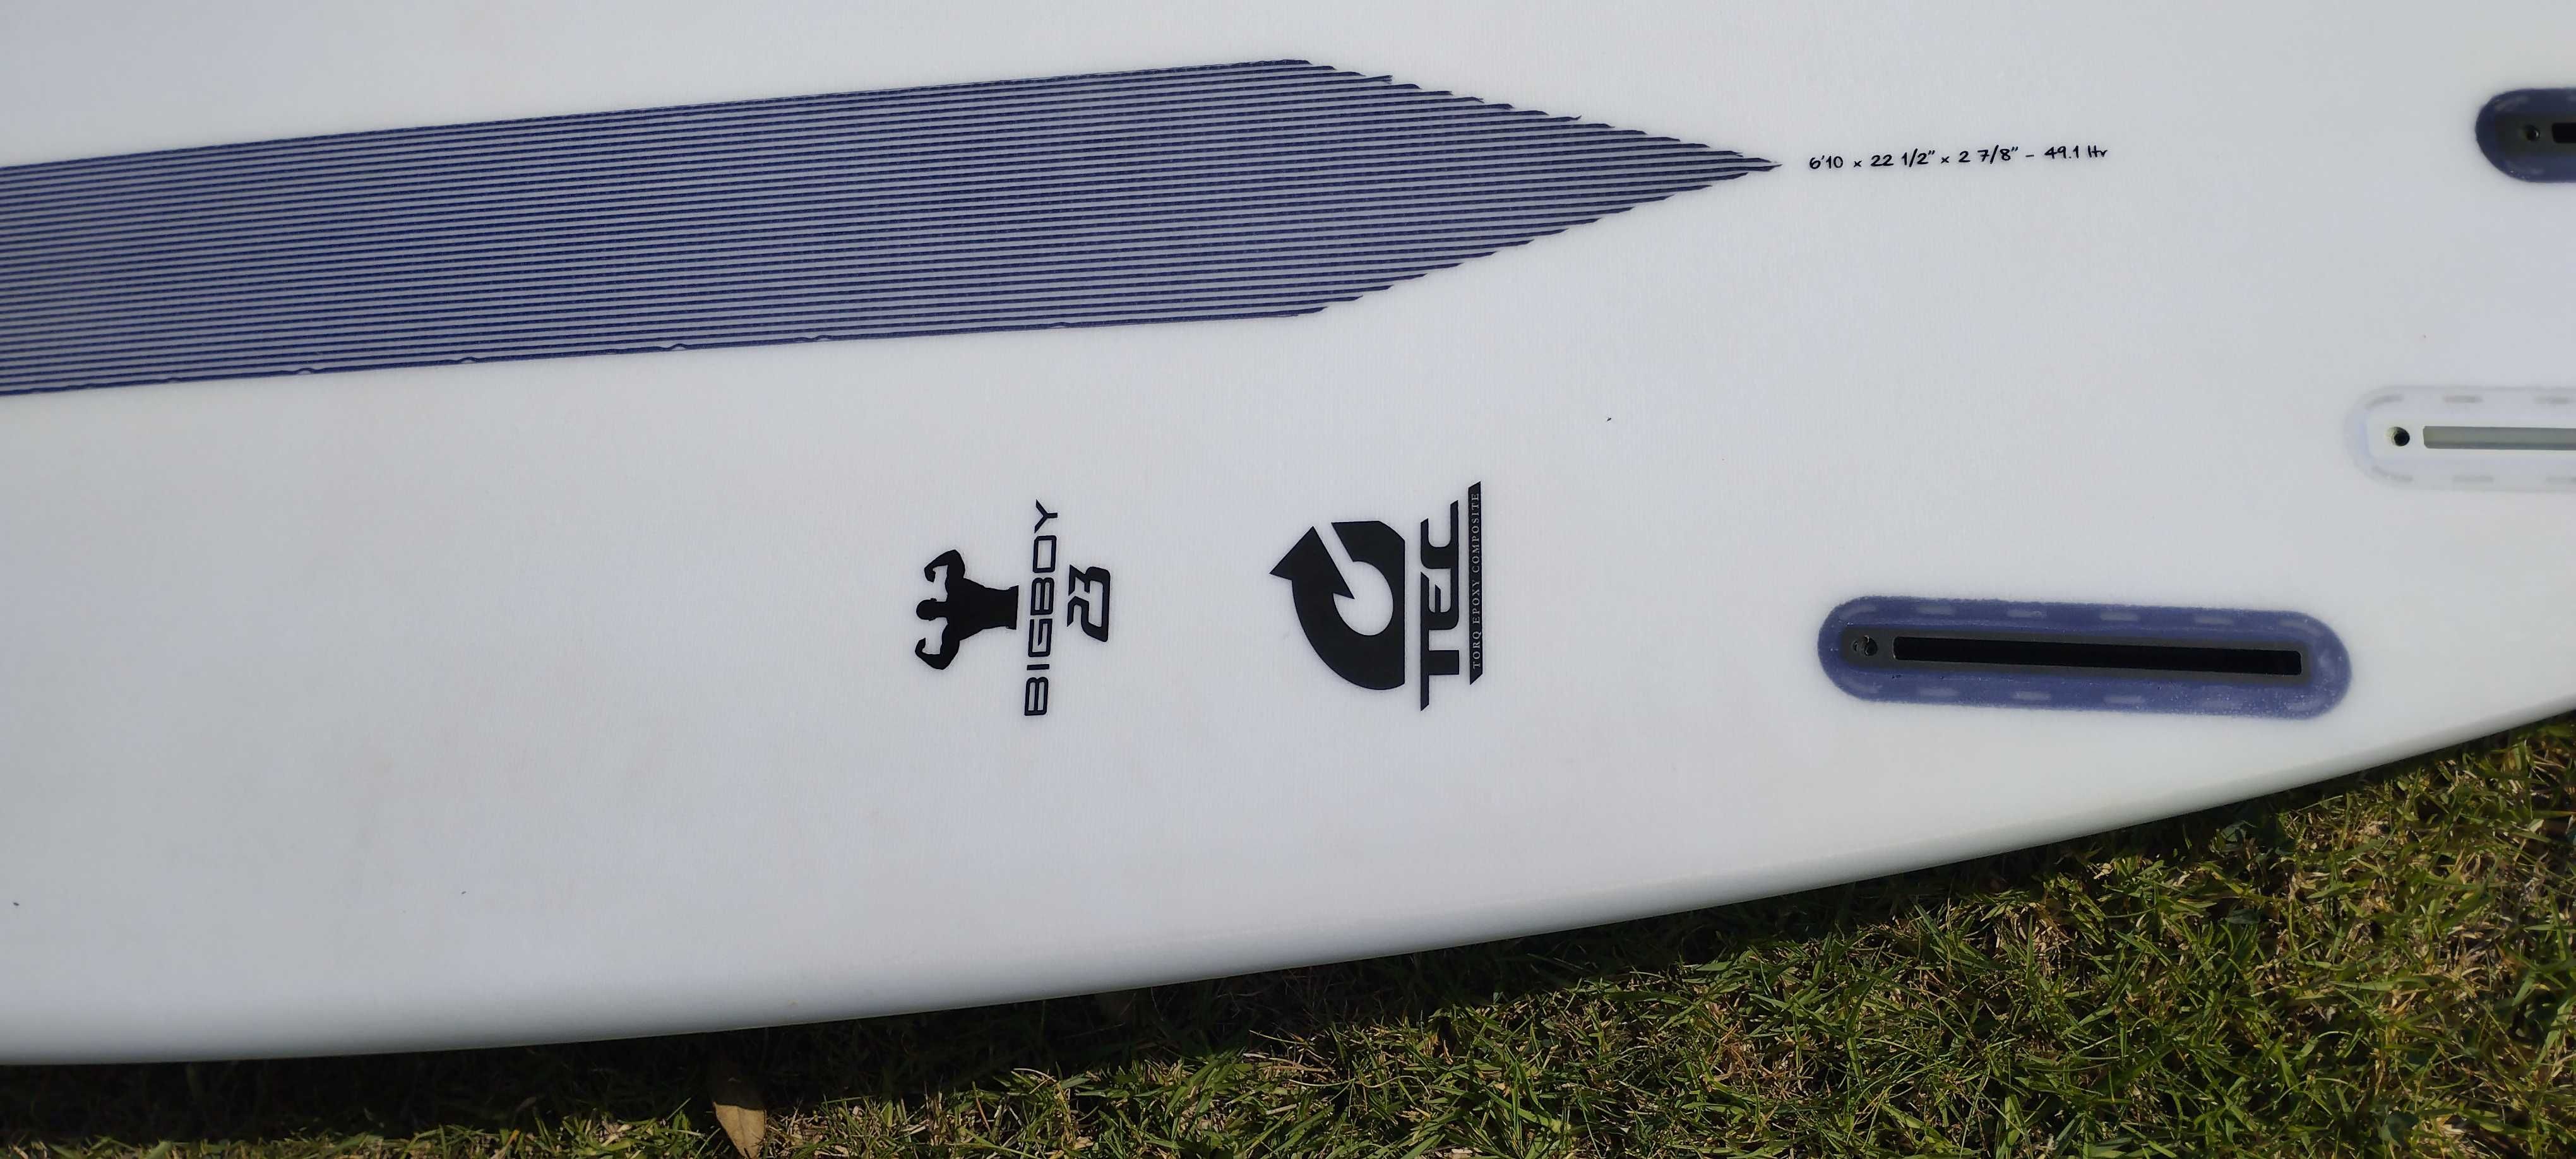 Prancha de surf Torq TEC Big Boy 6'10, 50 litros